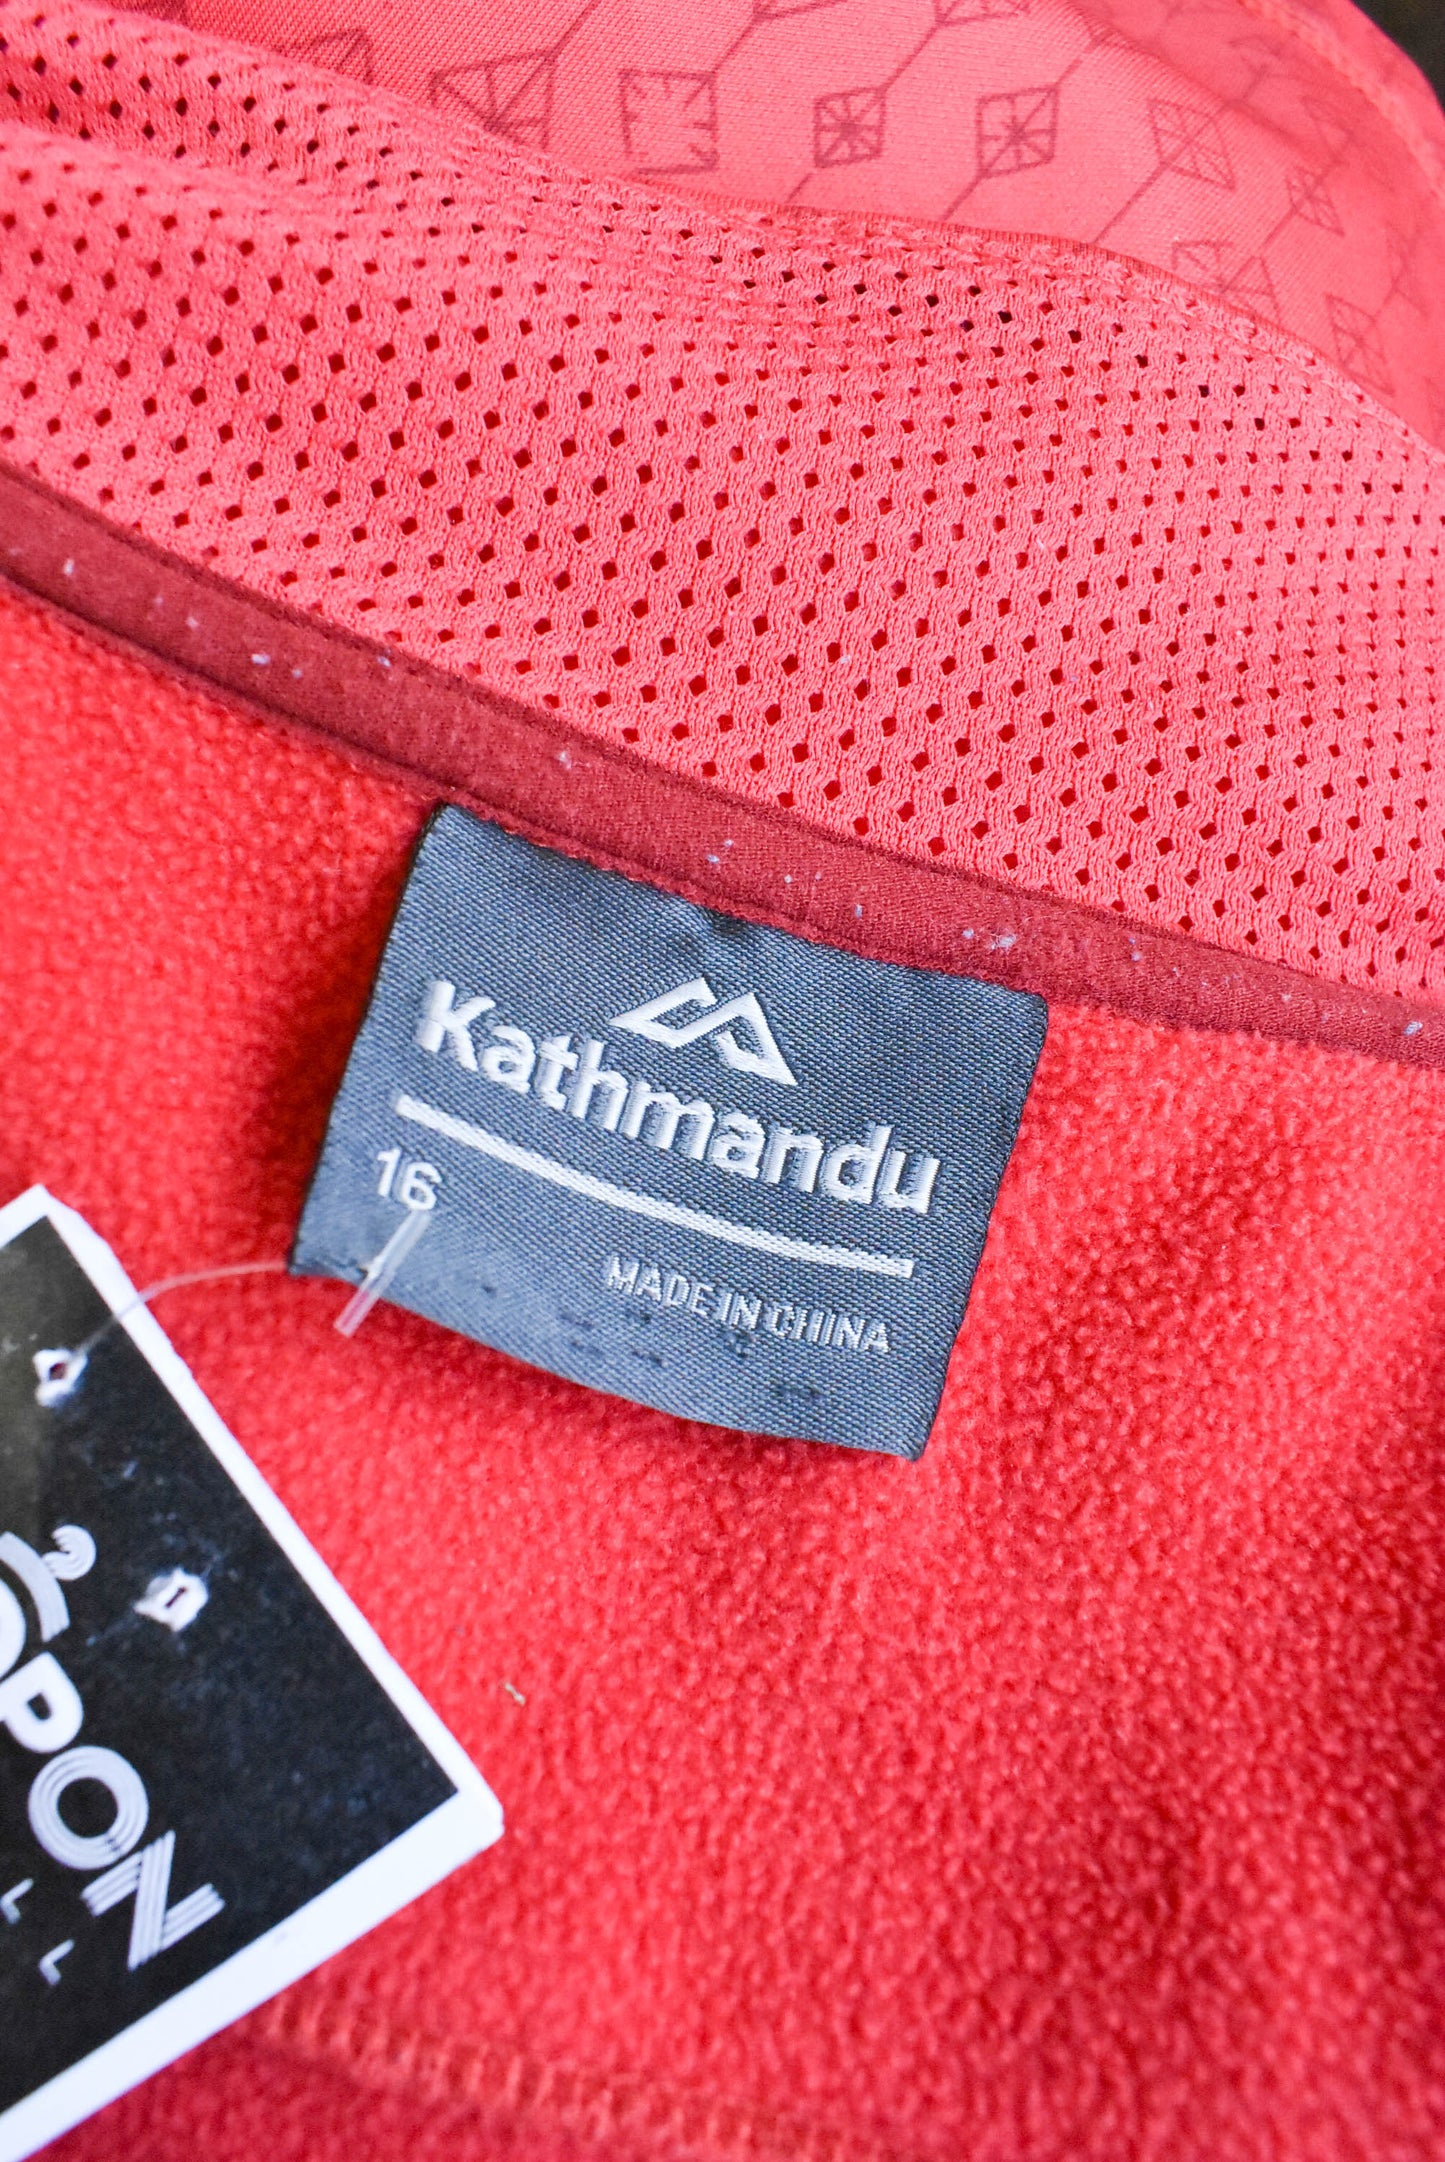 Kathmandu red print jacket, size 16